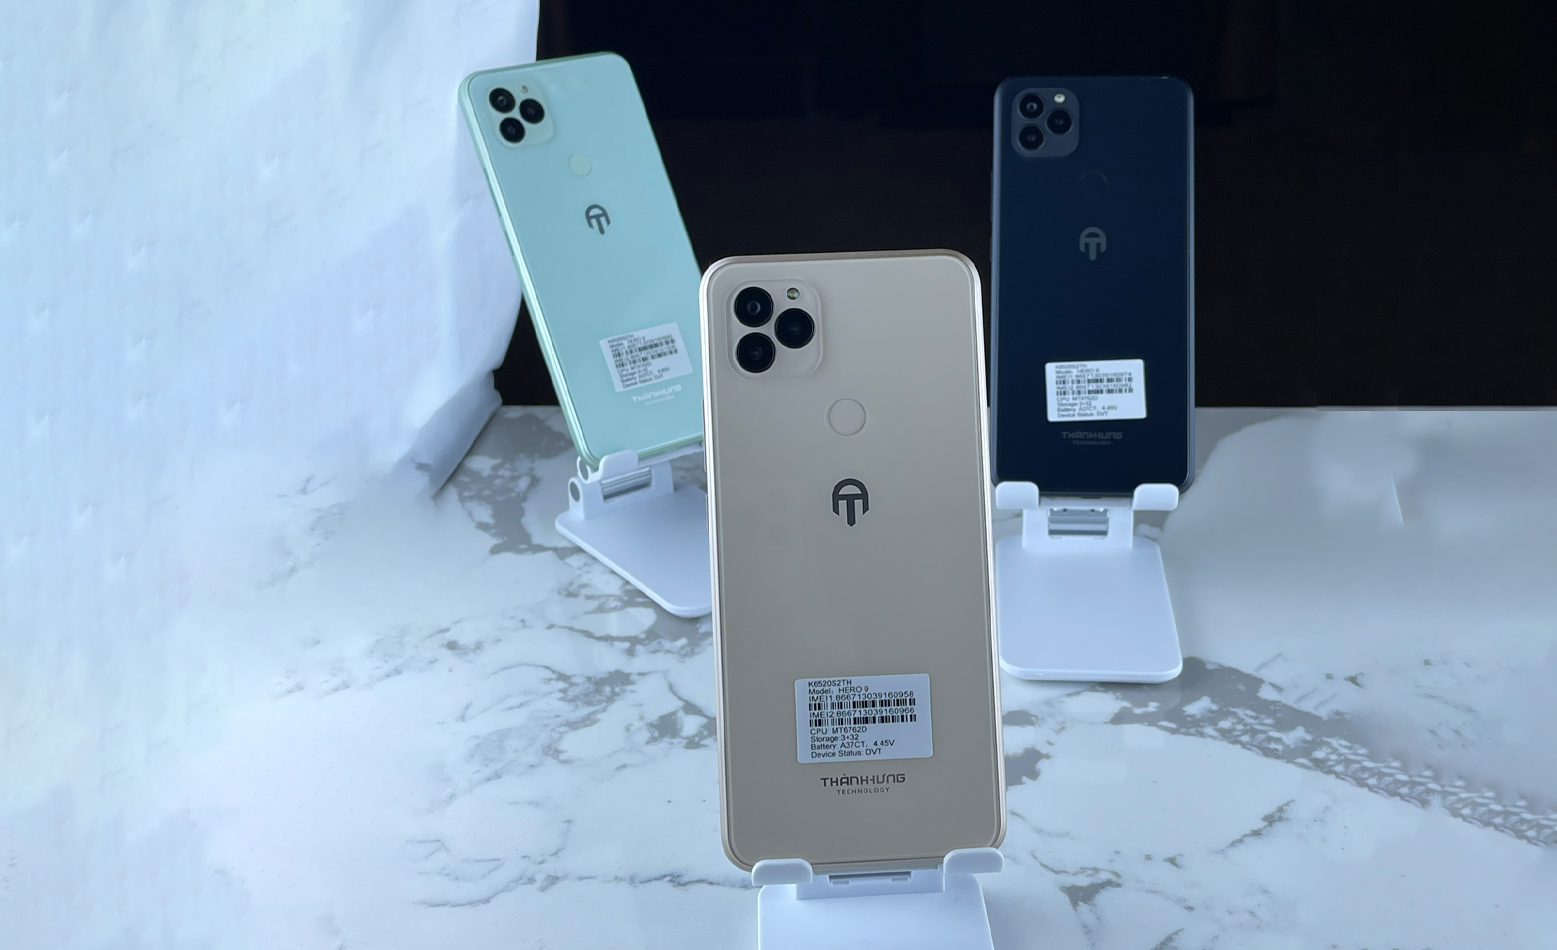 Lộ diện mẫu điện thoại Việt đẹp như iPhone, cạnh tranh với Bphone - Ảnh 3.